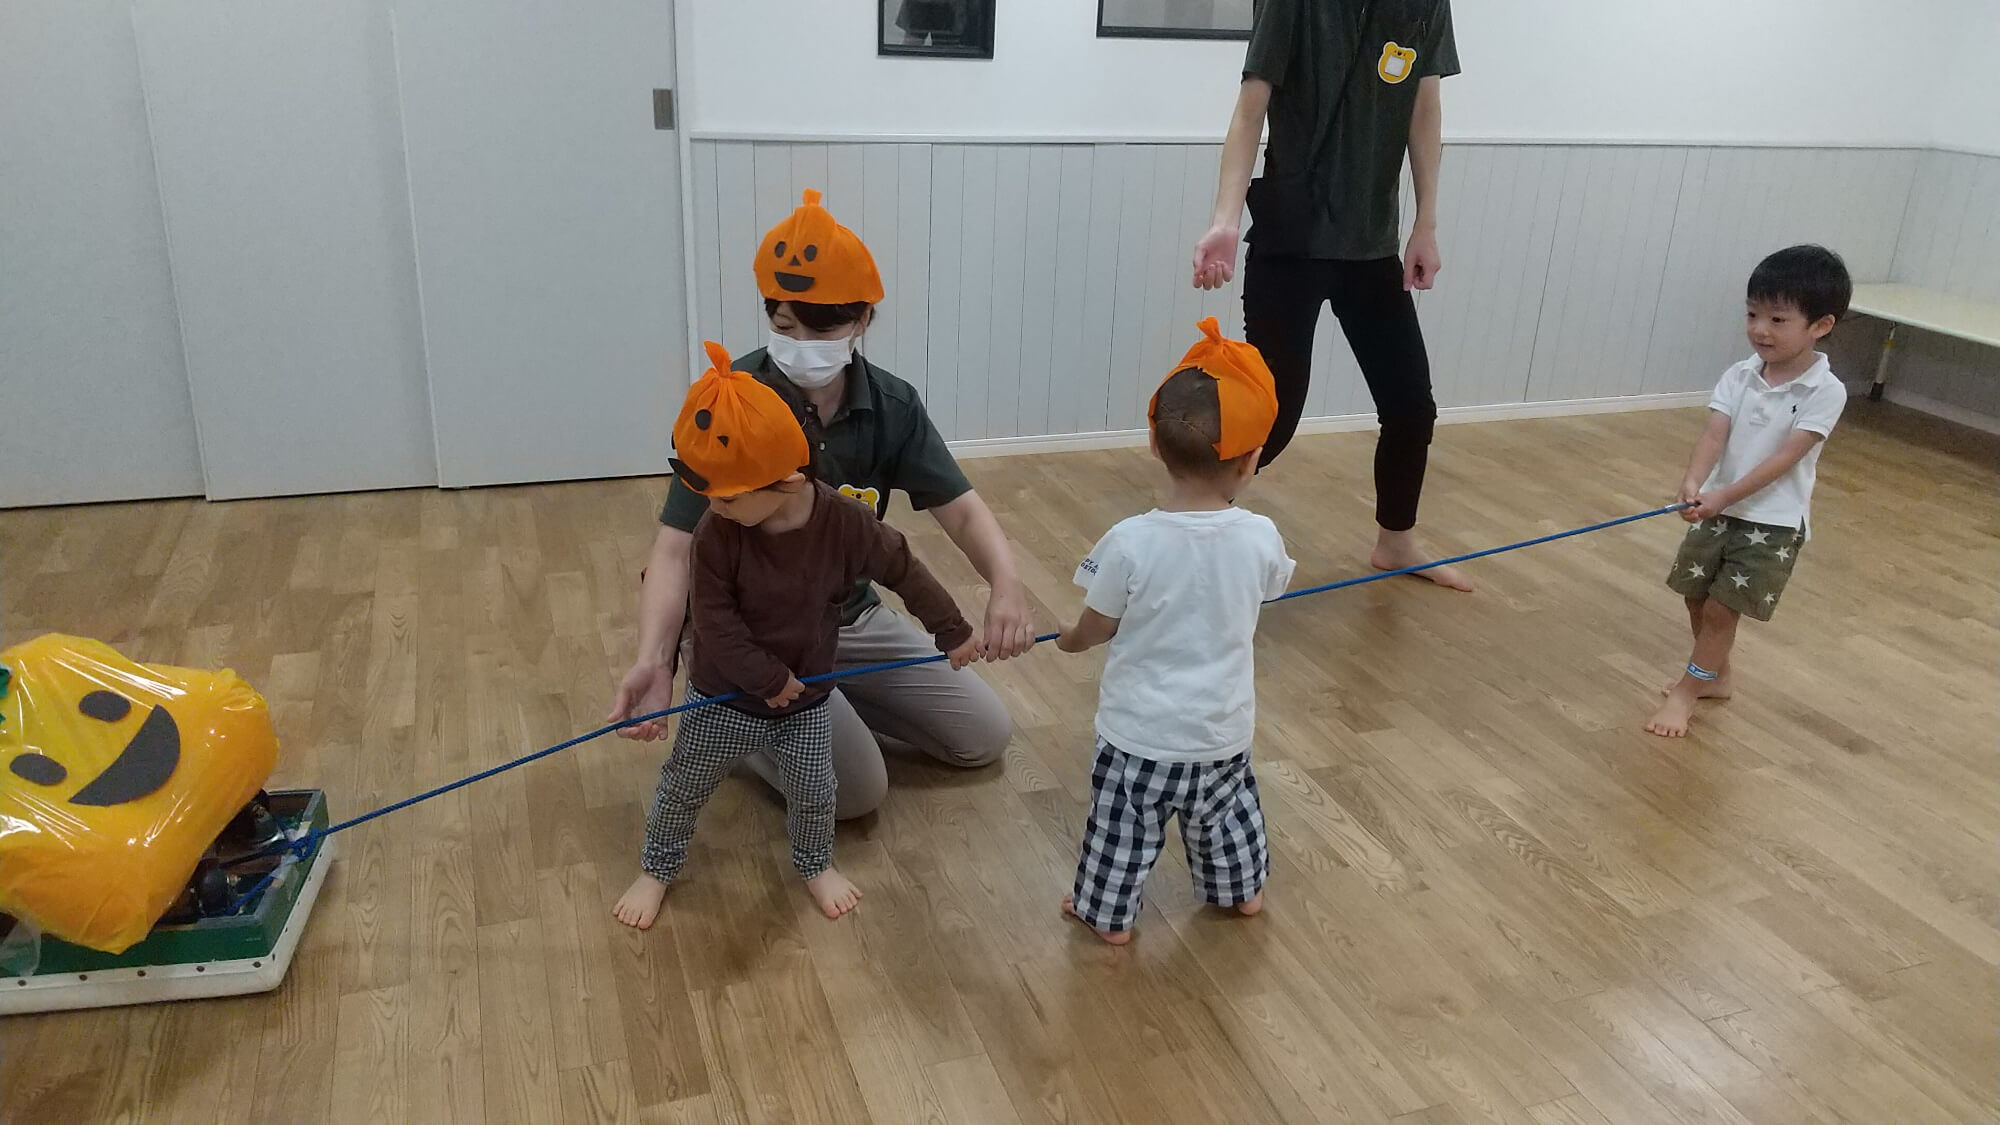 かぼちゃを引っ張って遊ぶ子どもたち